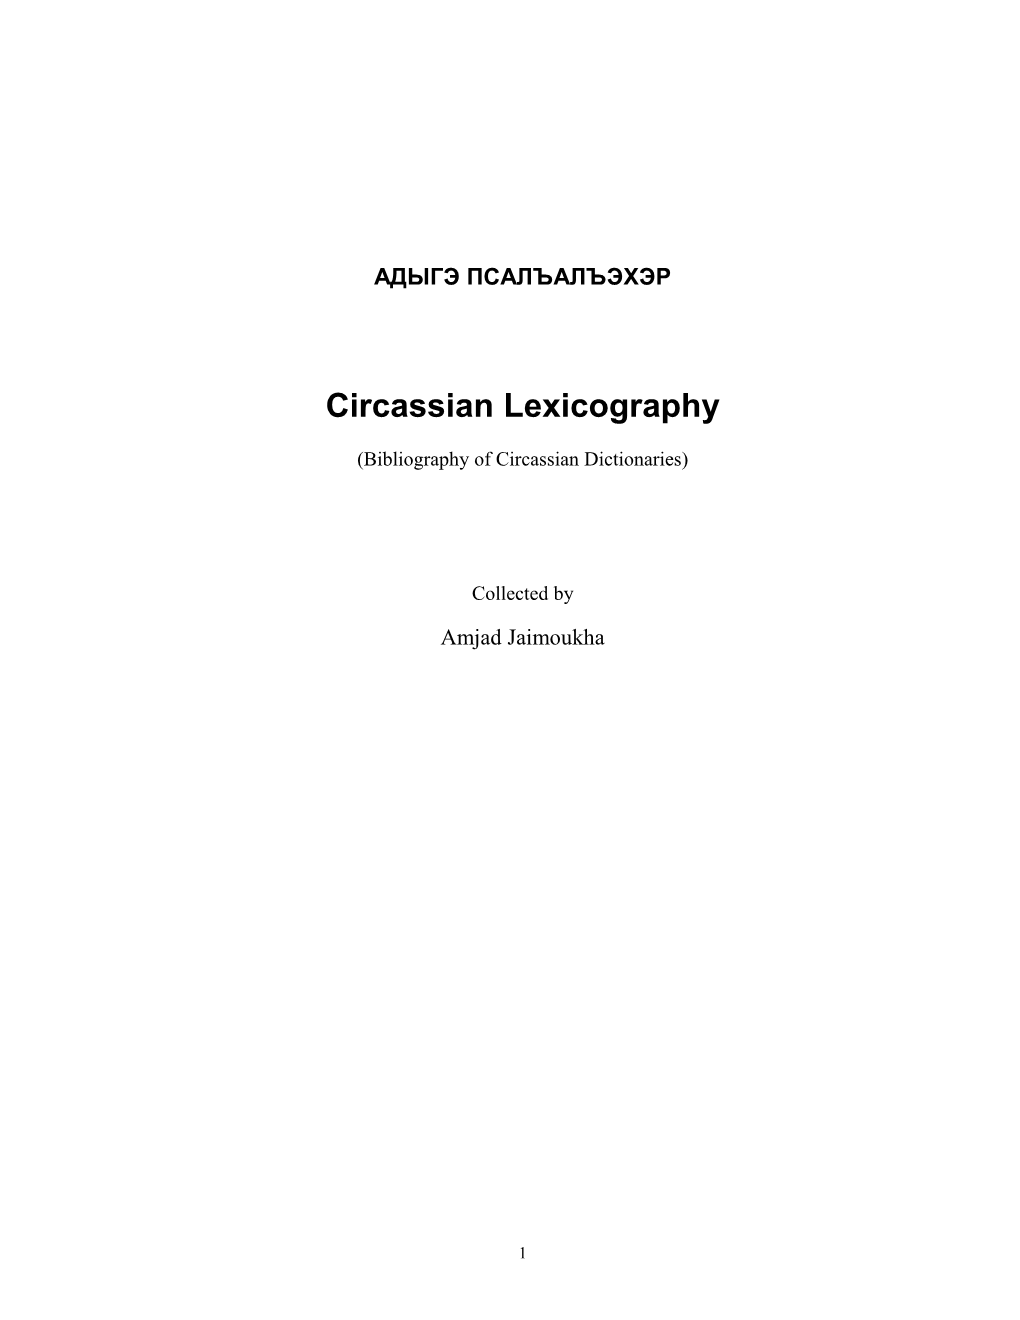 Circassian Lexicography